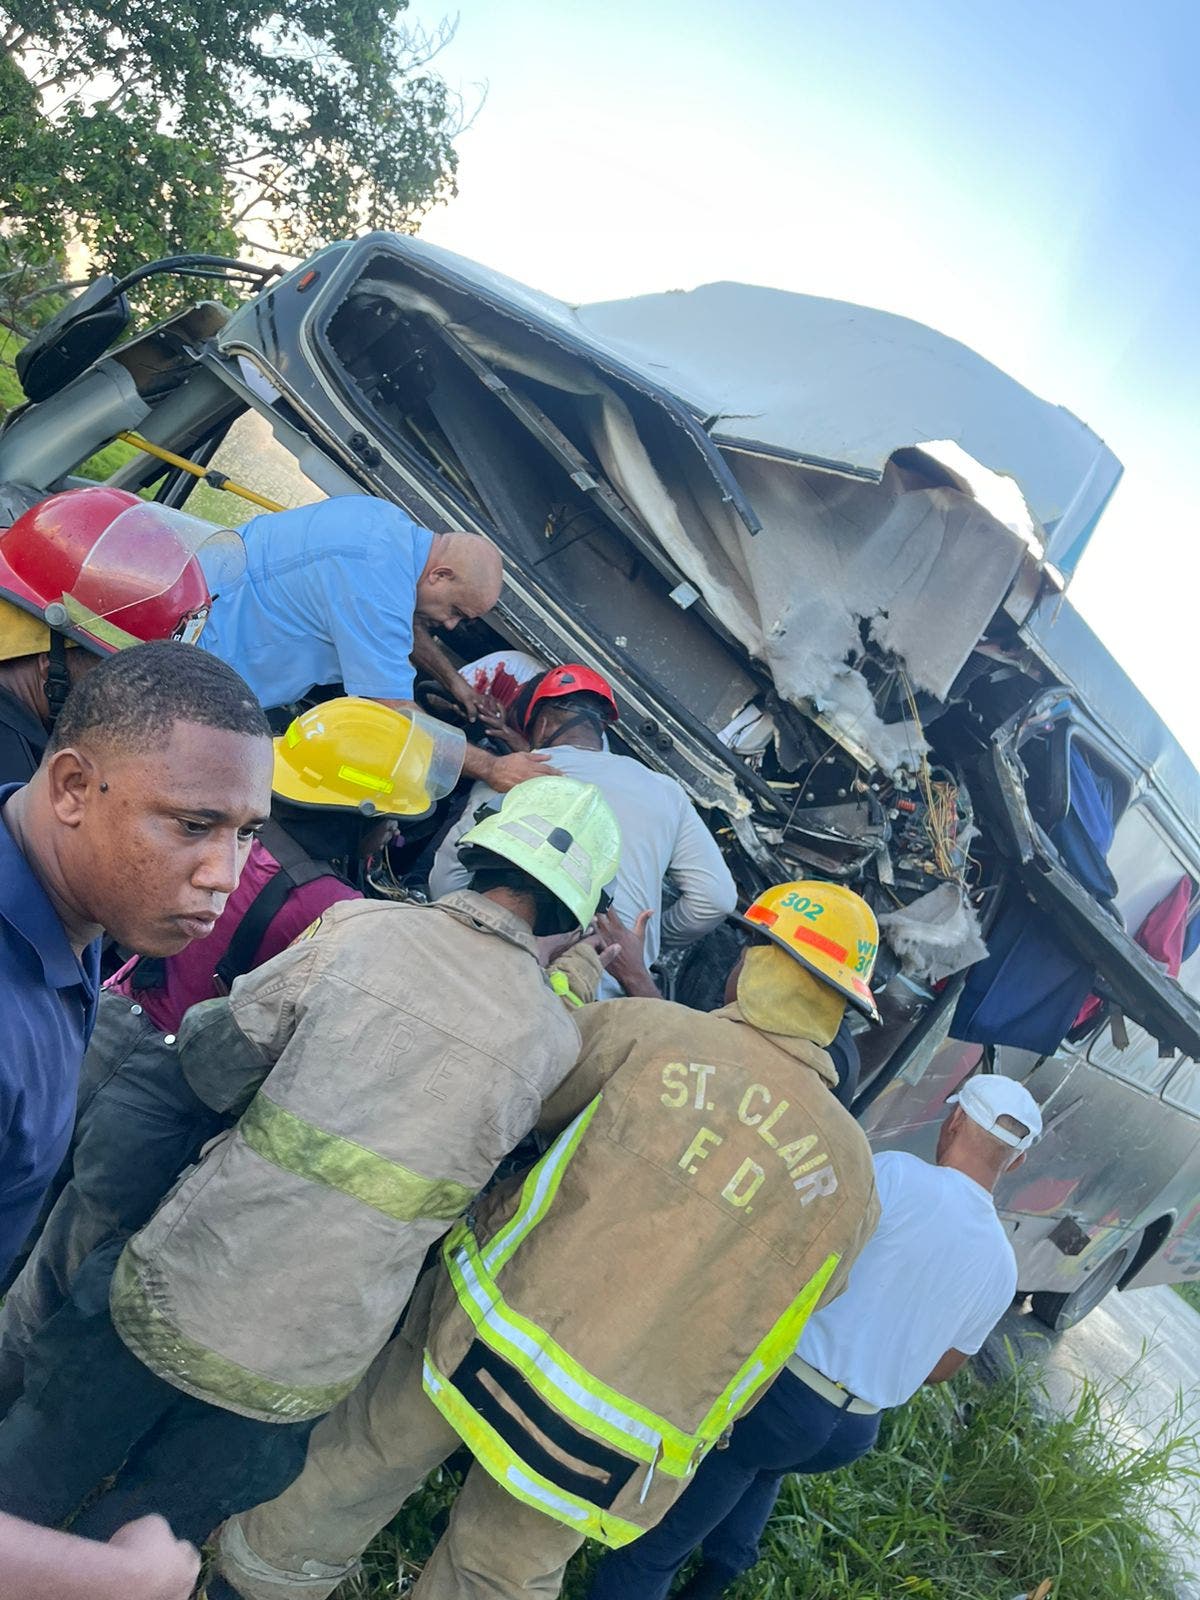 Al menos 4 muertos y 11 heridos durante accidente en Higüey